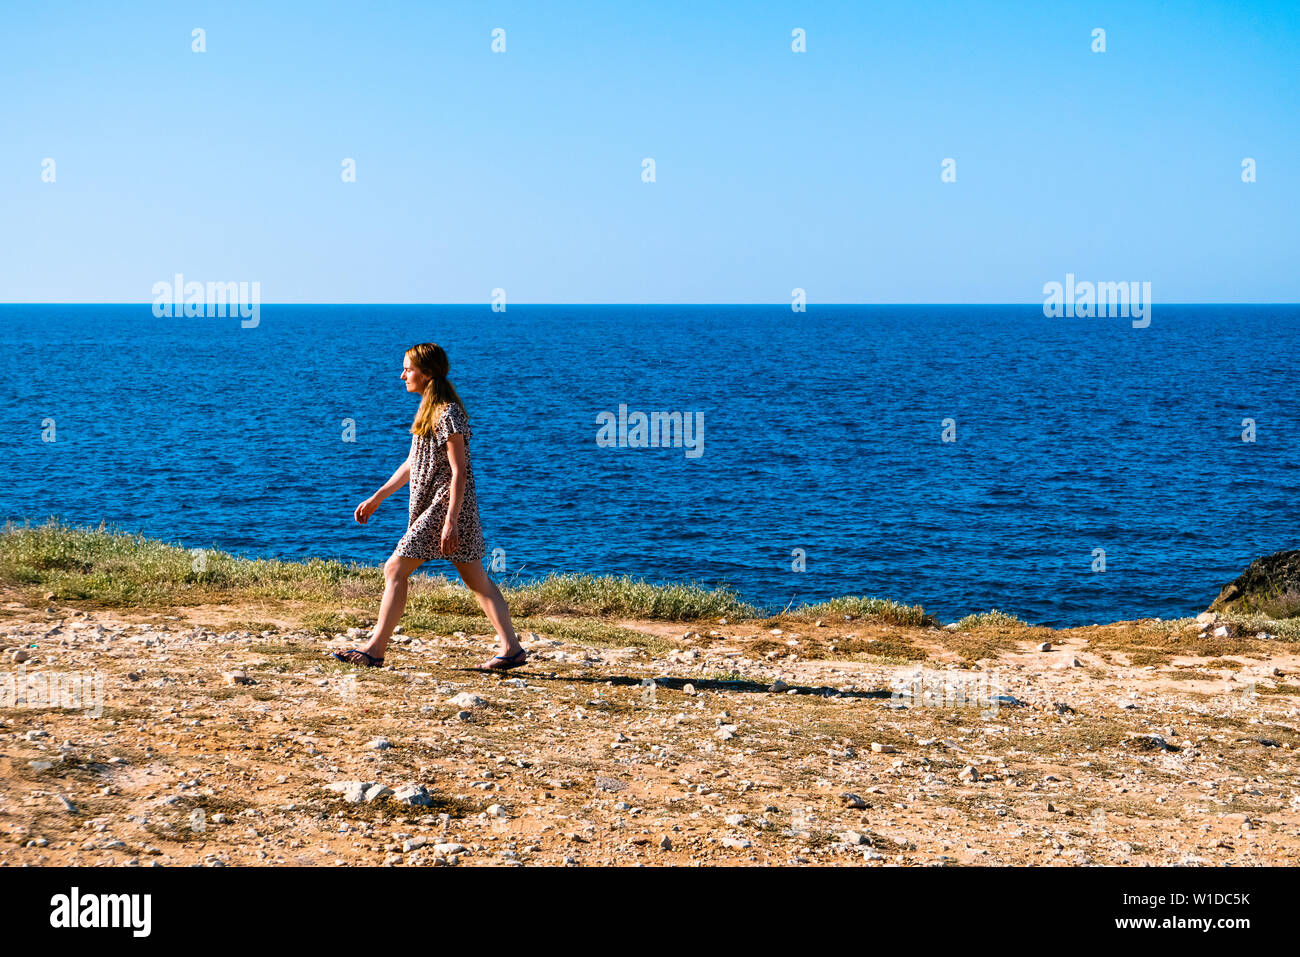 Polignano,Italia ; una mujer vestida como hipster en la costa adriática de Polignano en un atardecer de verano solo que camina en dirección al sol. Foto de stock